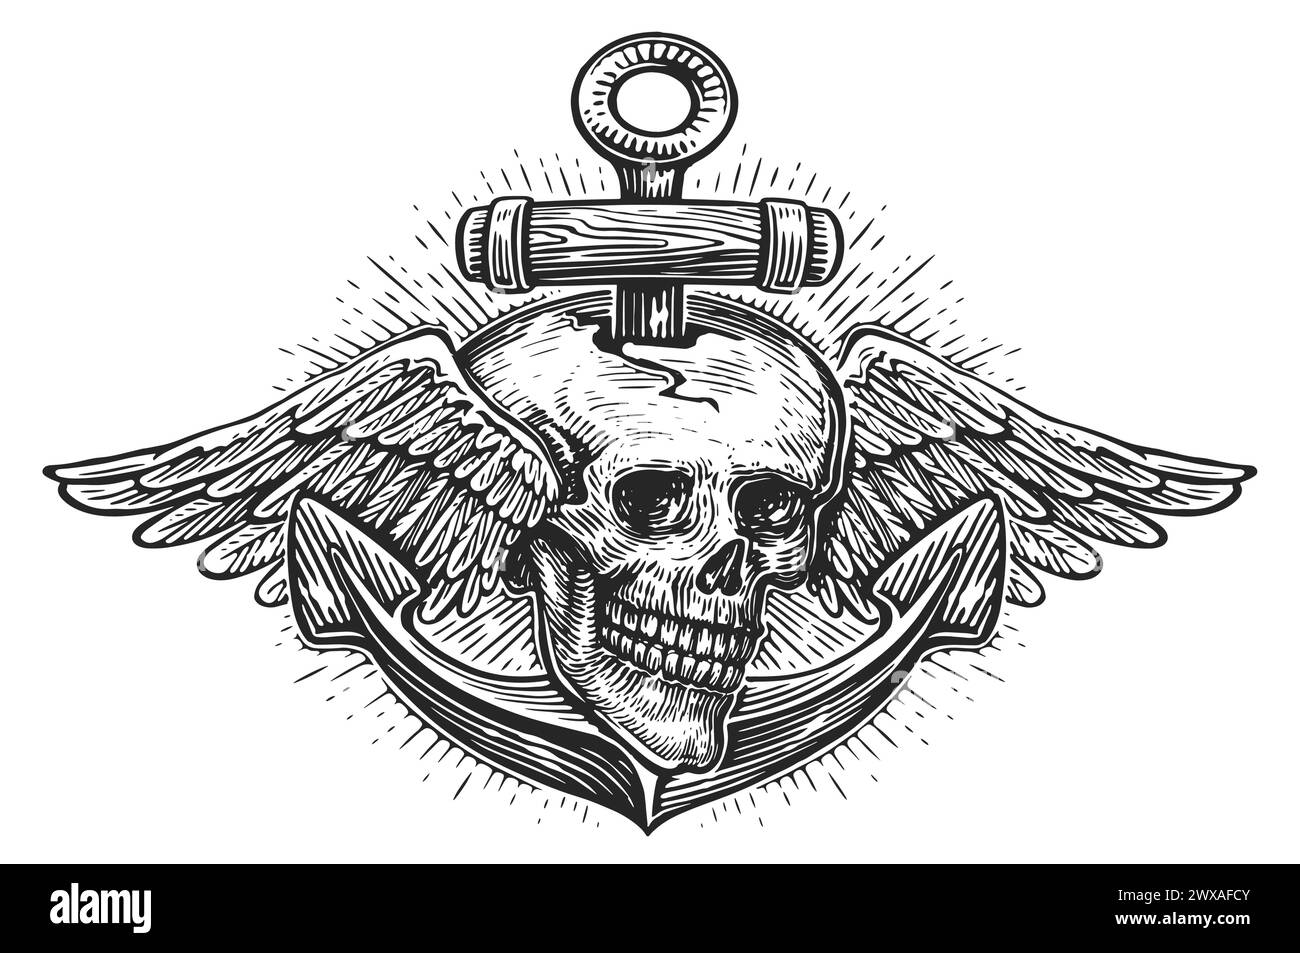 Crâne avec ailes et ancre de vieux navire. Illustration vintage dessinée à la main, style de gravure d'esquisse Illustration de Vecteur